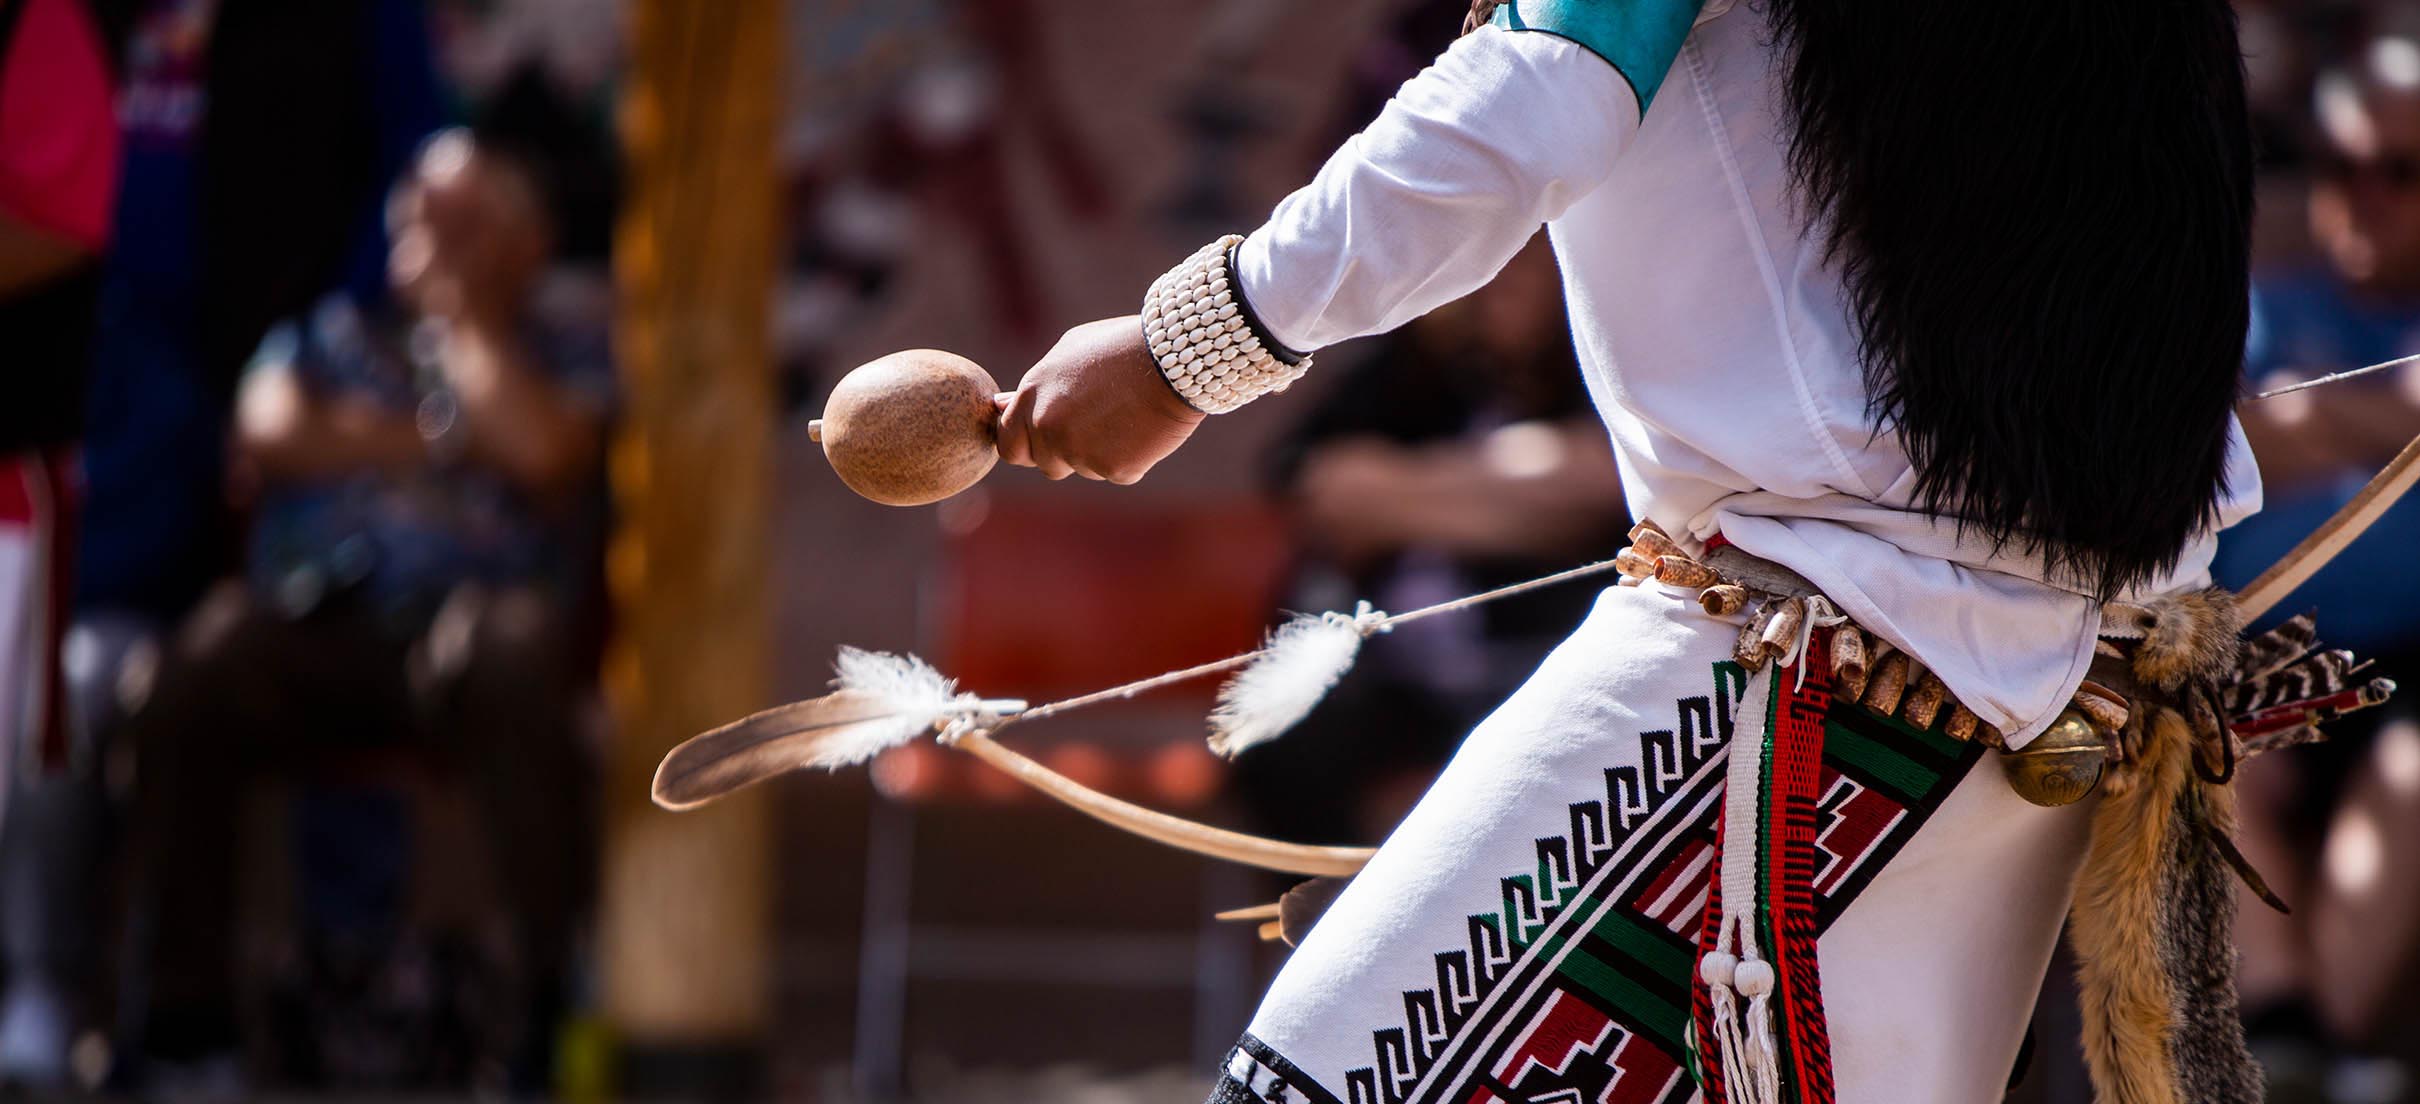 औपचारिक नृत्य करते हुए एक मूल अमेरिकी